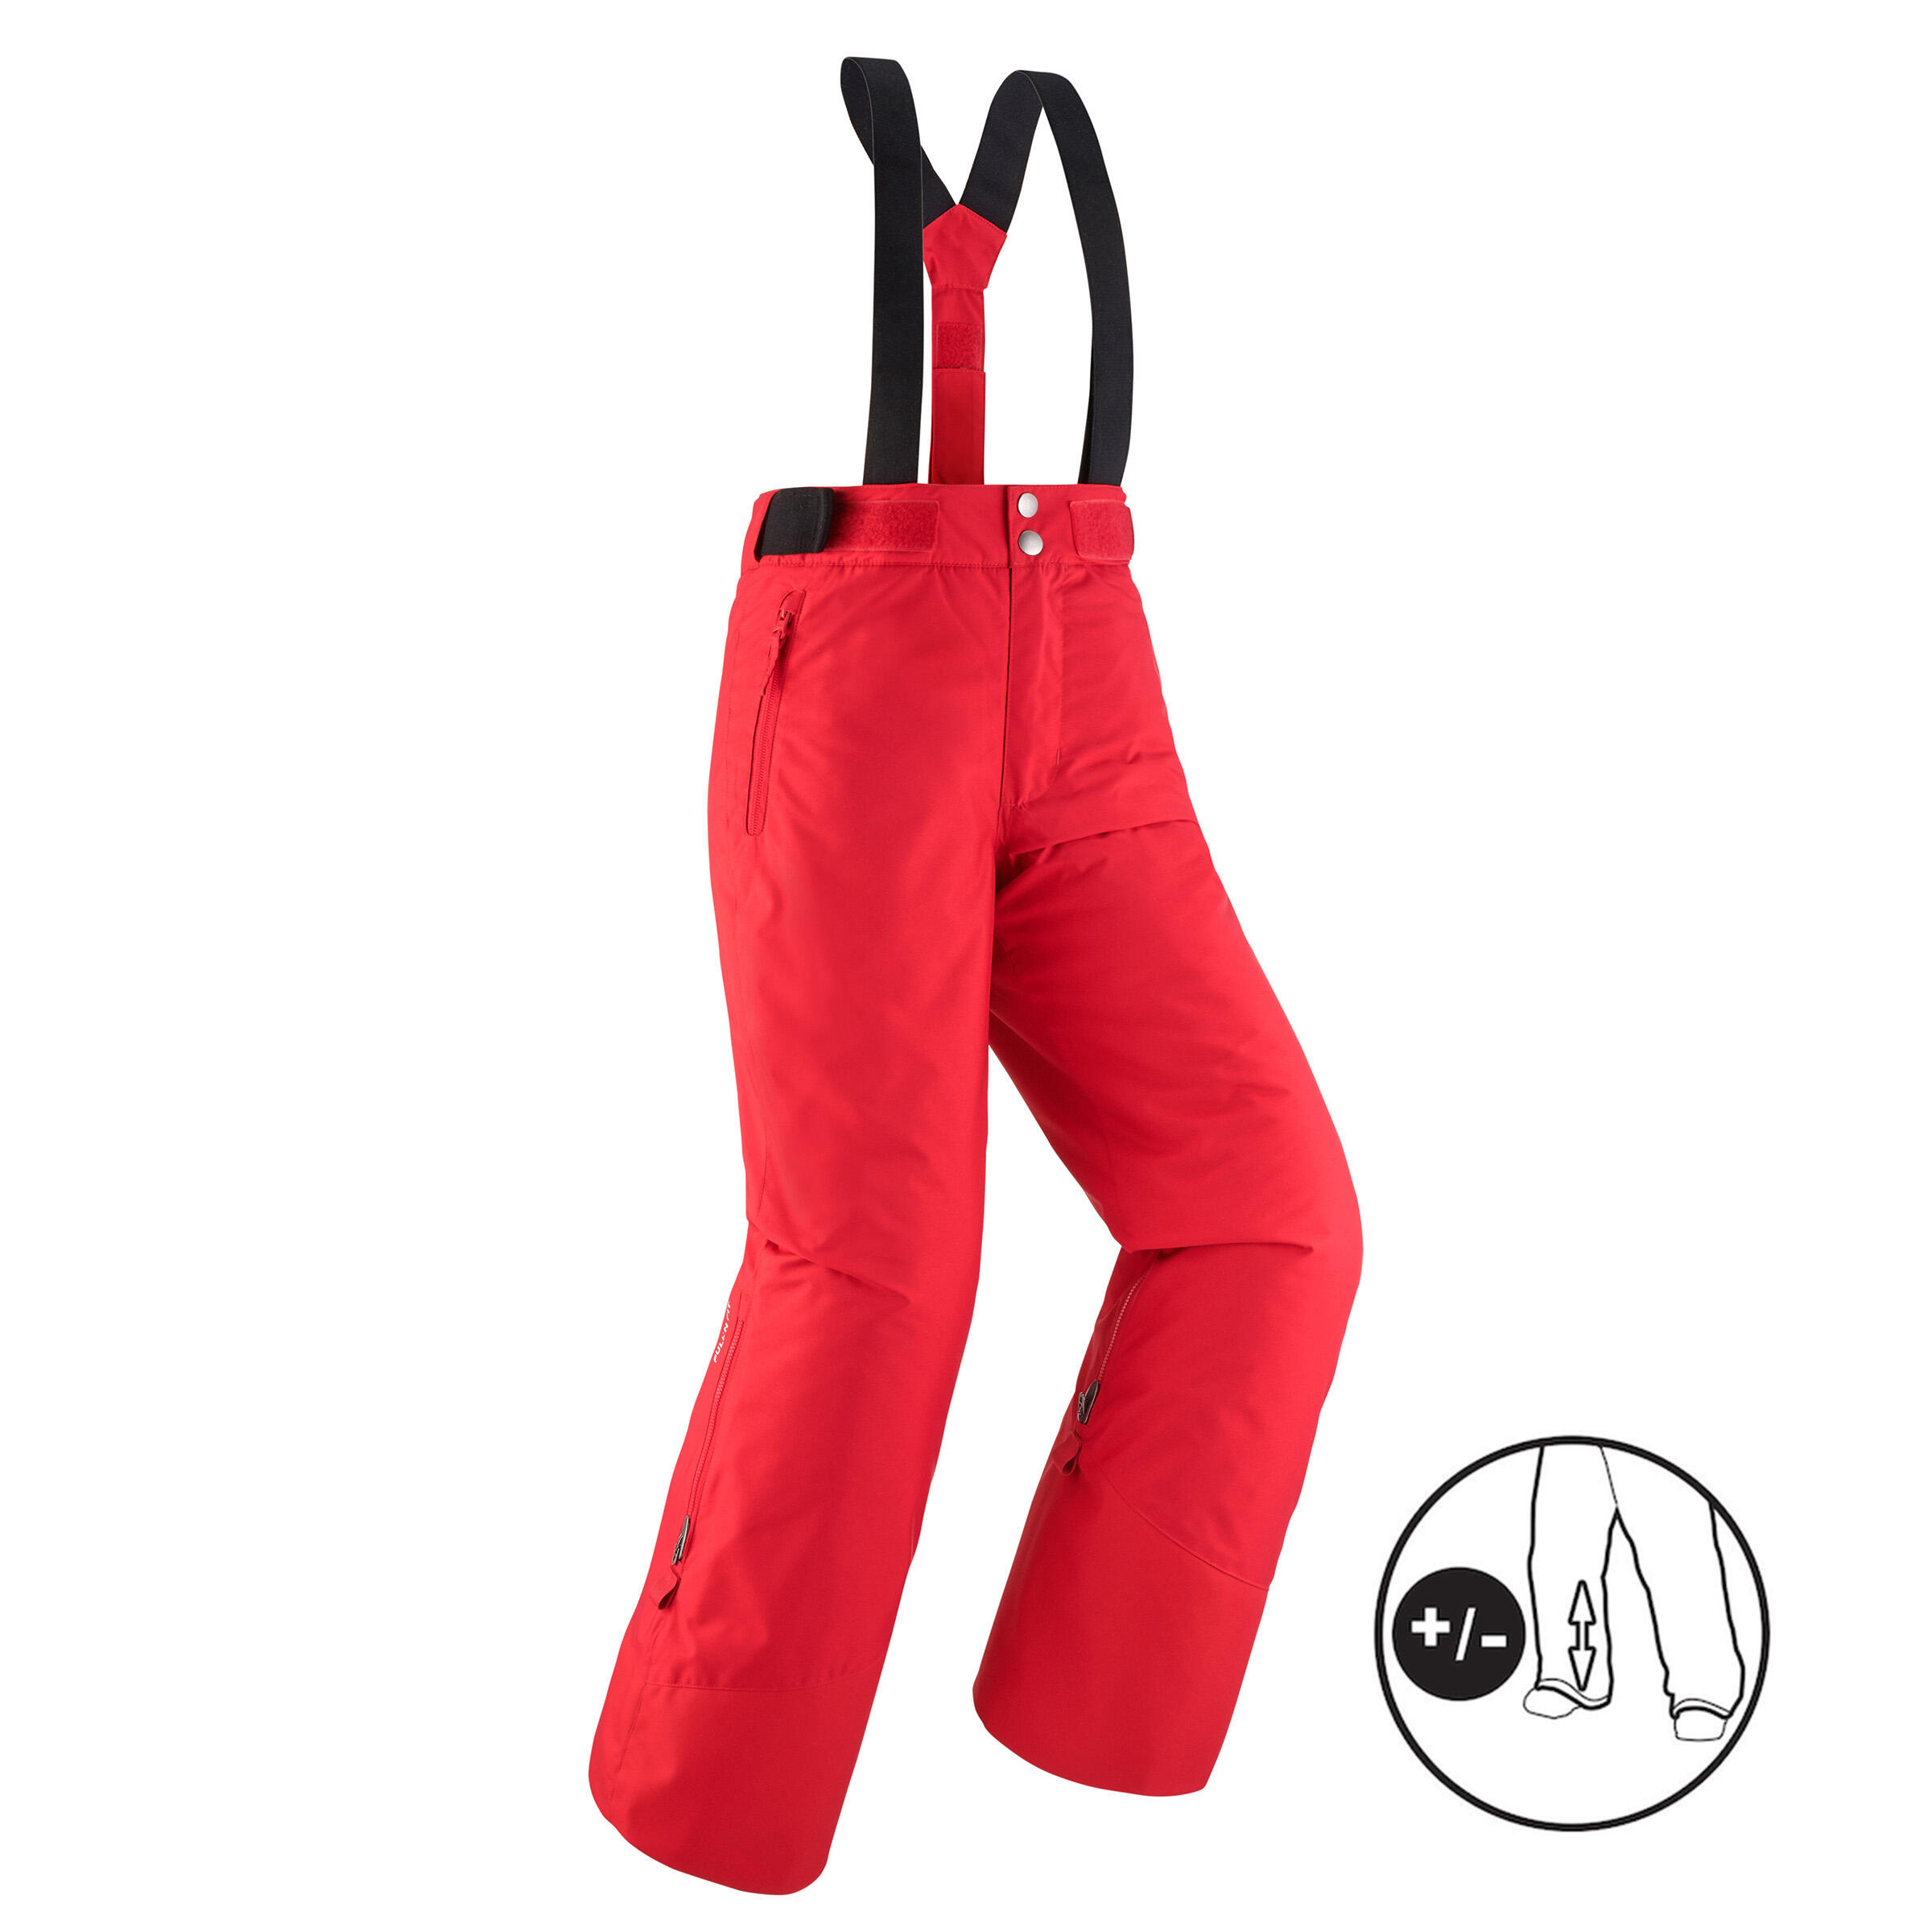 Pantalon călduros impermeabil schi PNF500 Roșu Băieți La Oferta Online decathlon imagine La Oferta Online